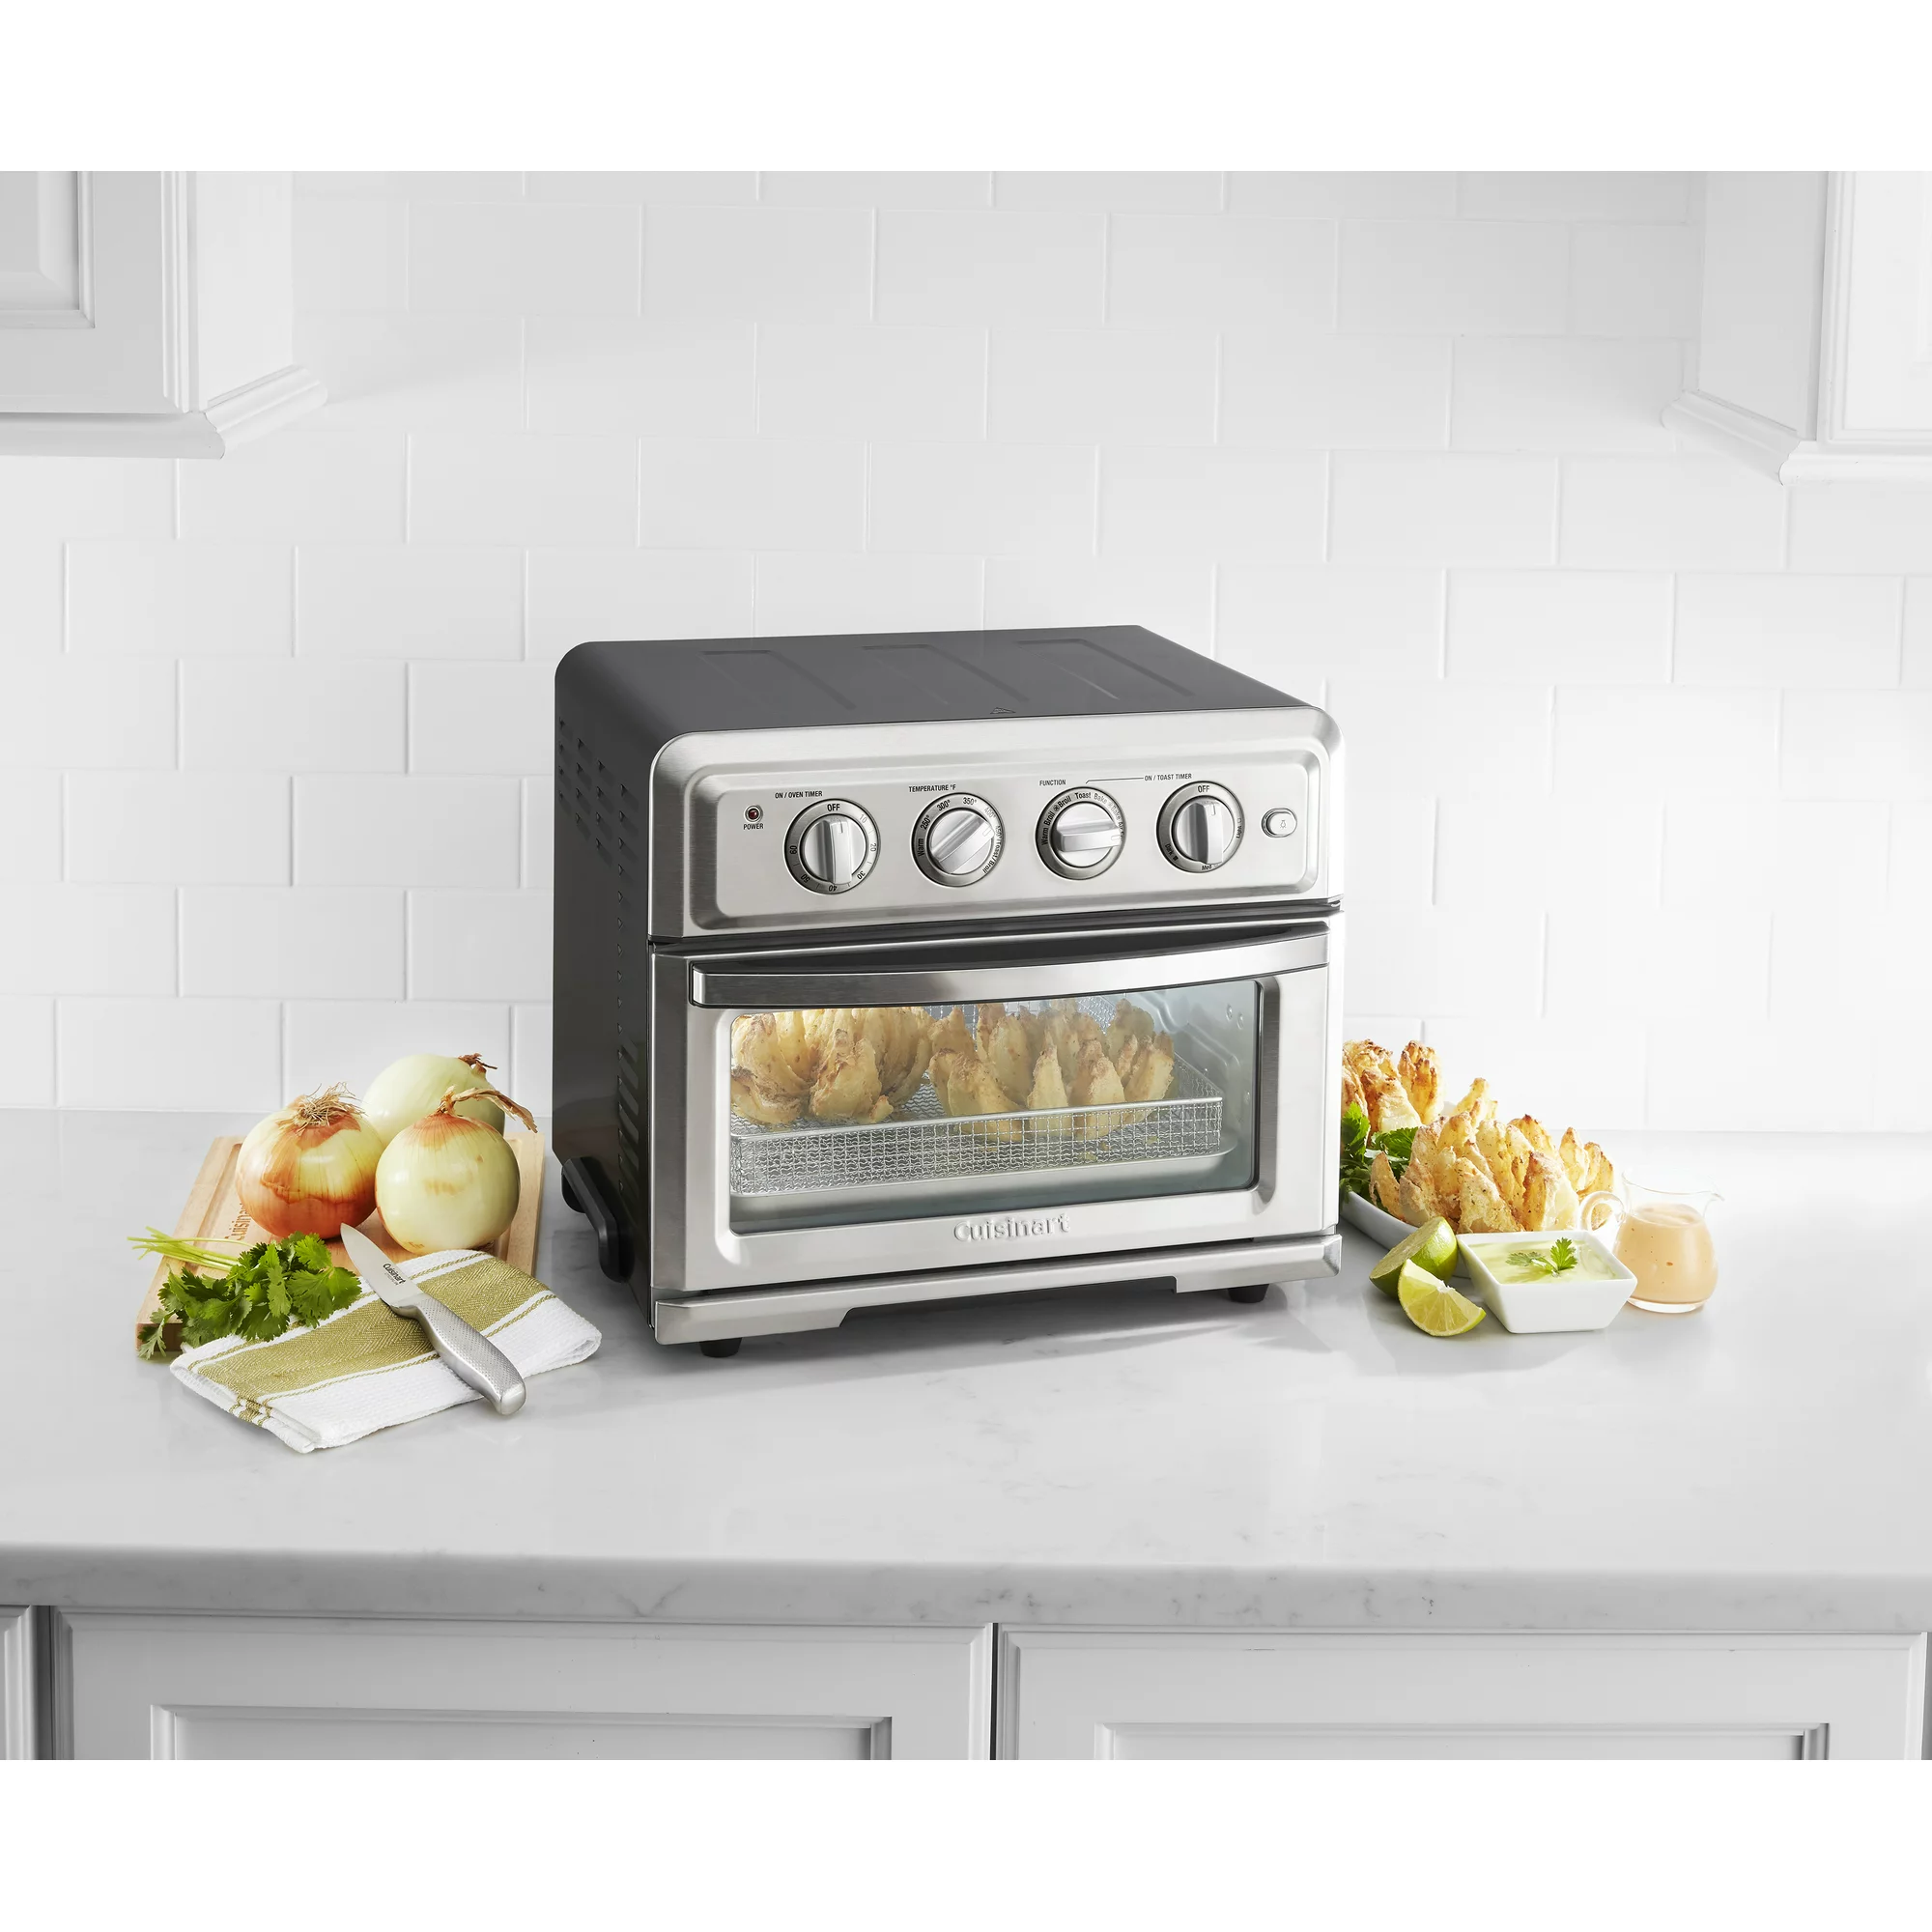 Cuisinart Air Fryer Toaster Oven - Black Stainless - Invastor